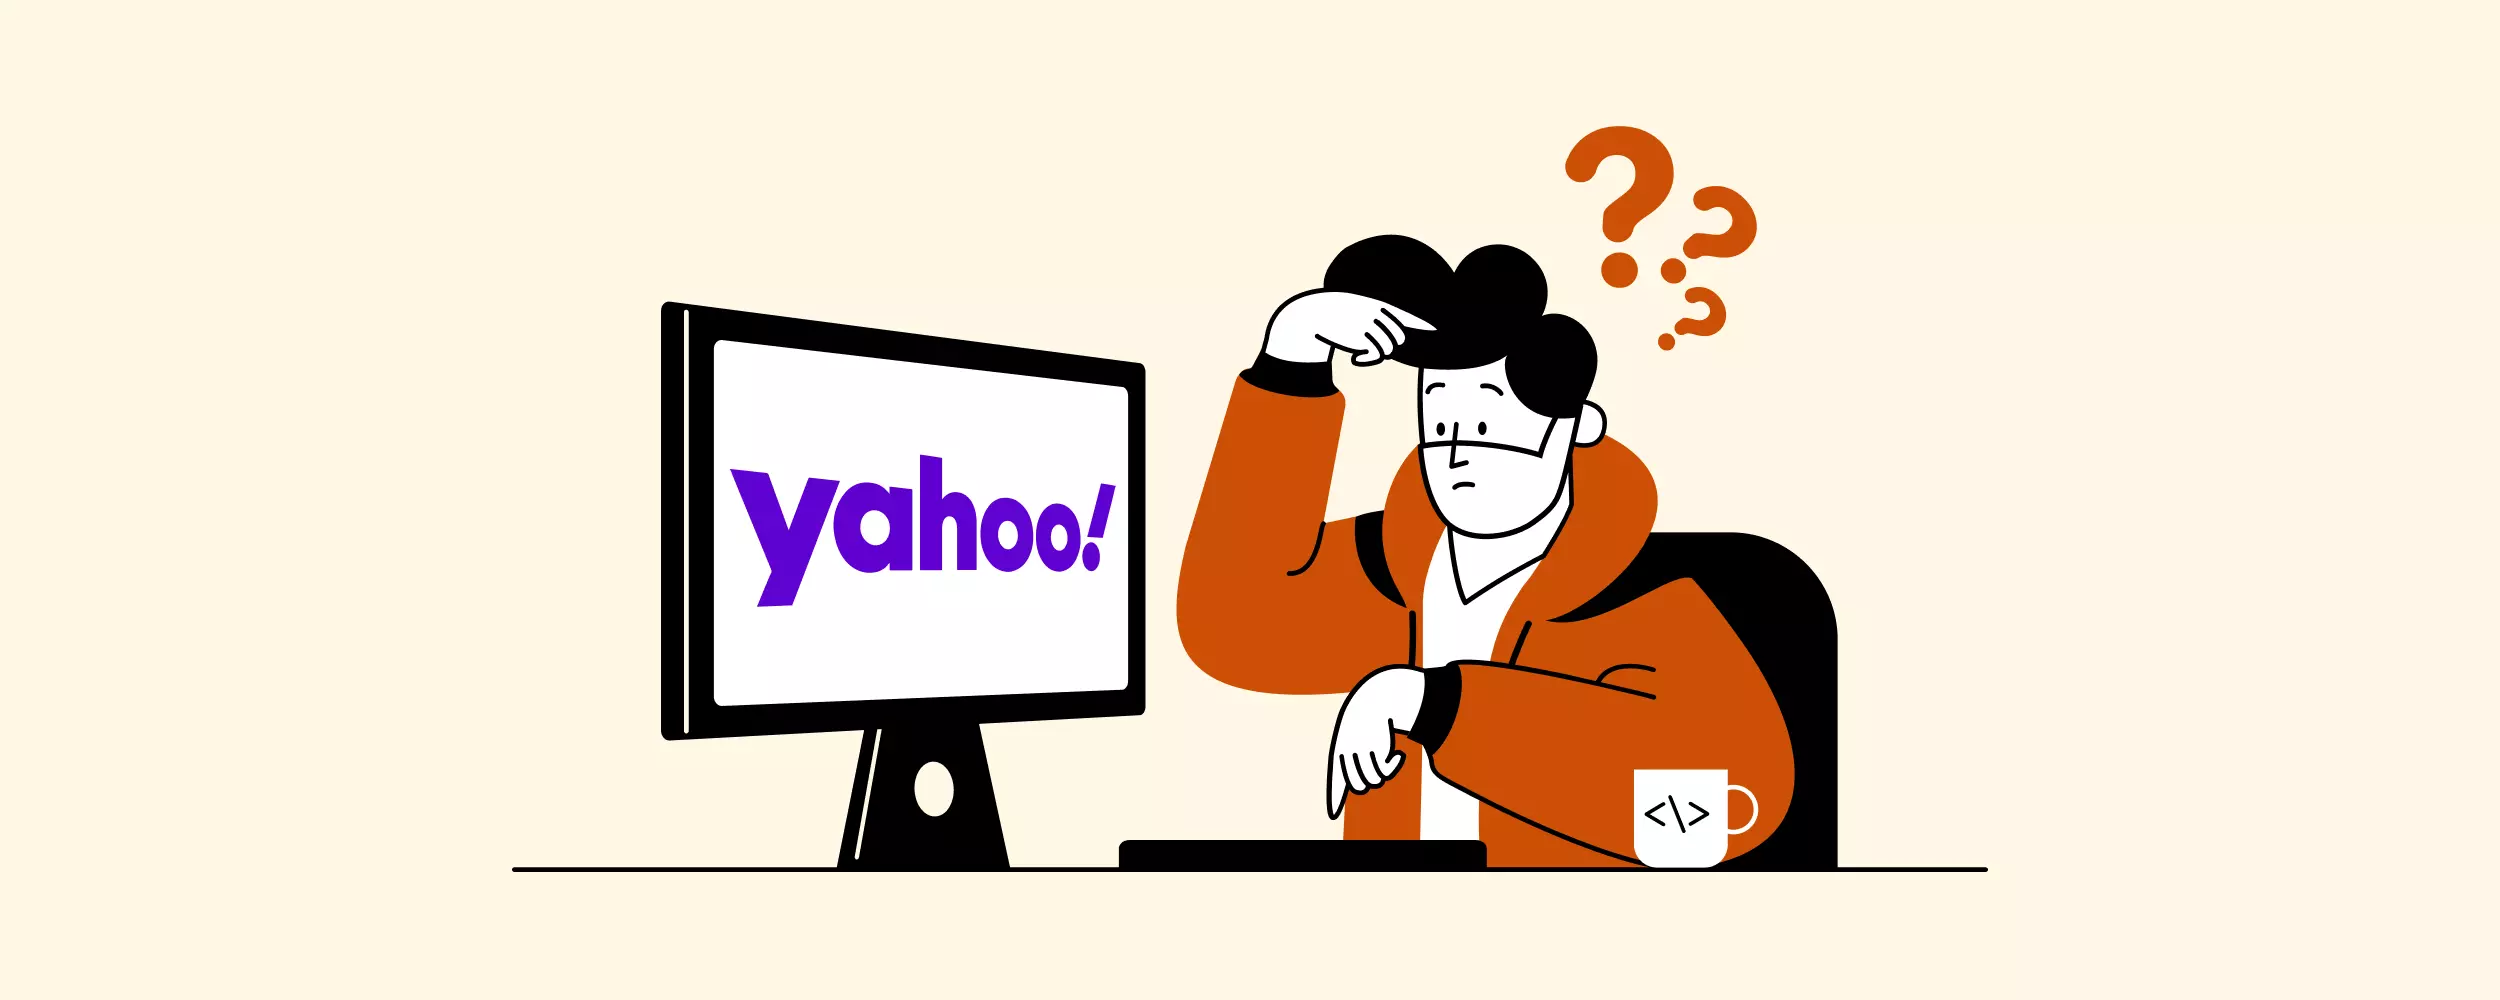 Email Marketing Fácil: importe contatos a partir do Yahoo!